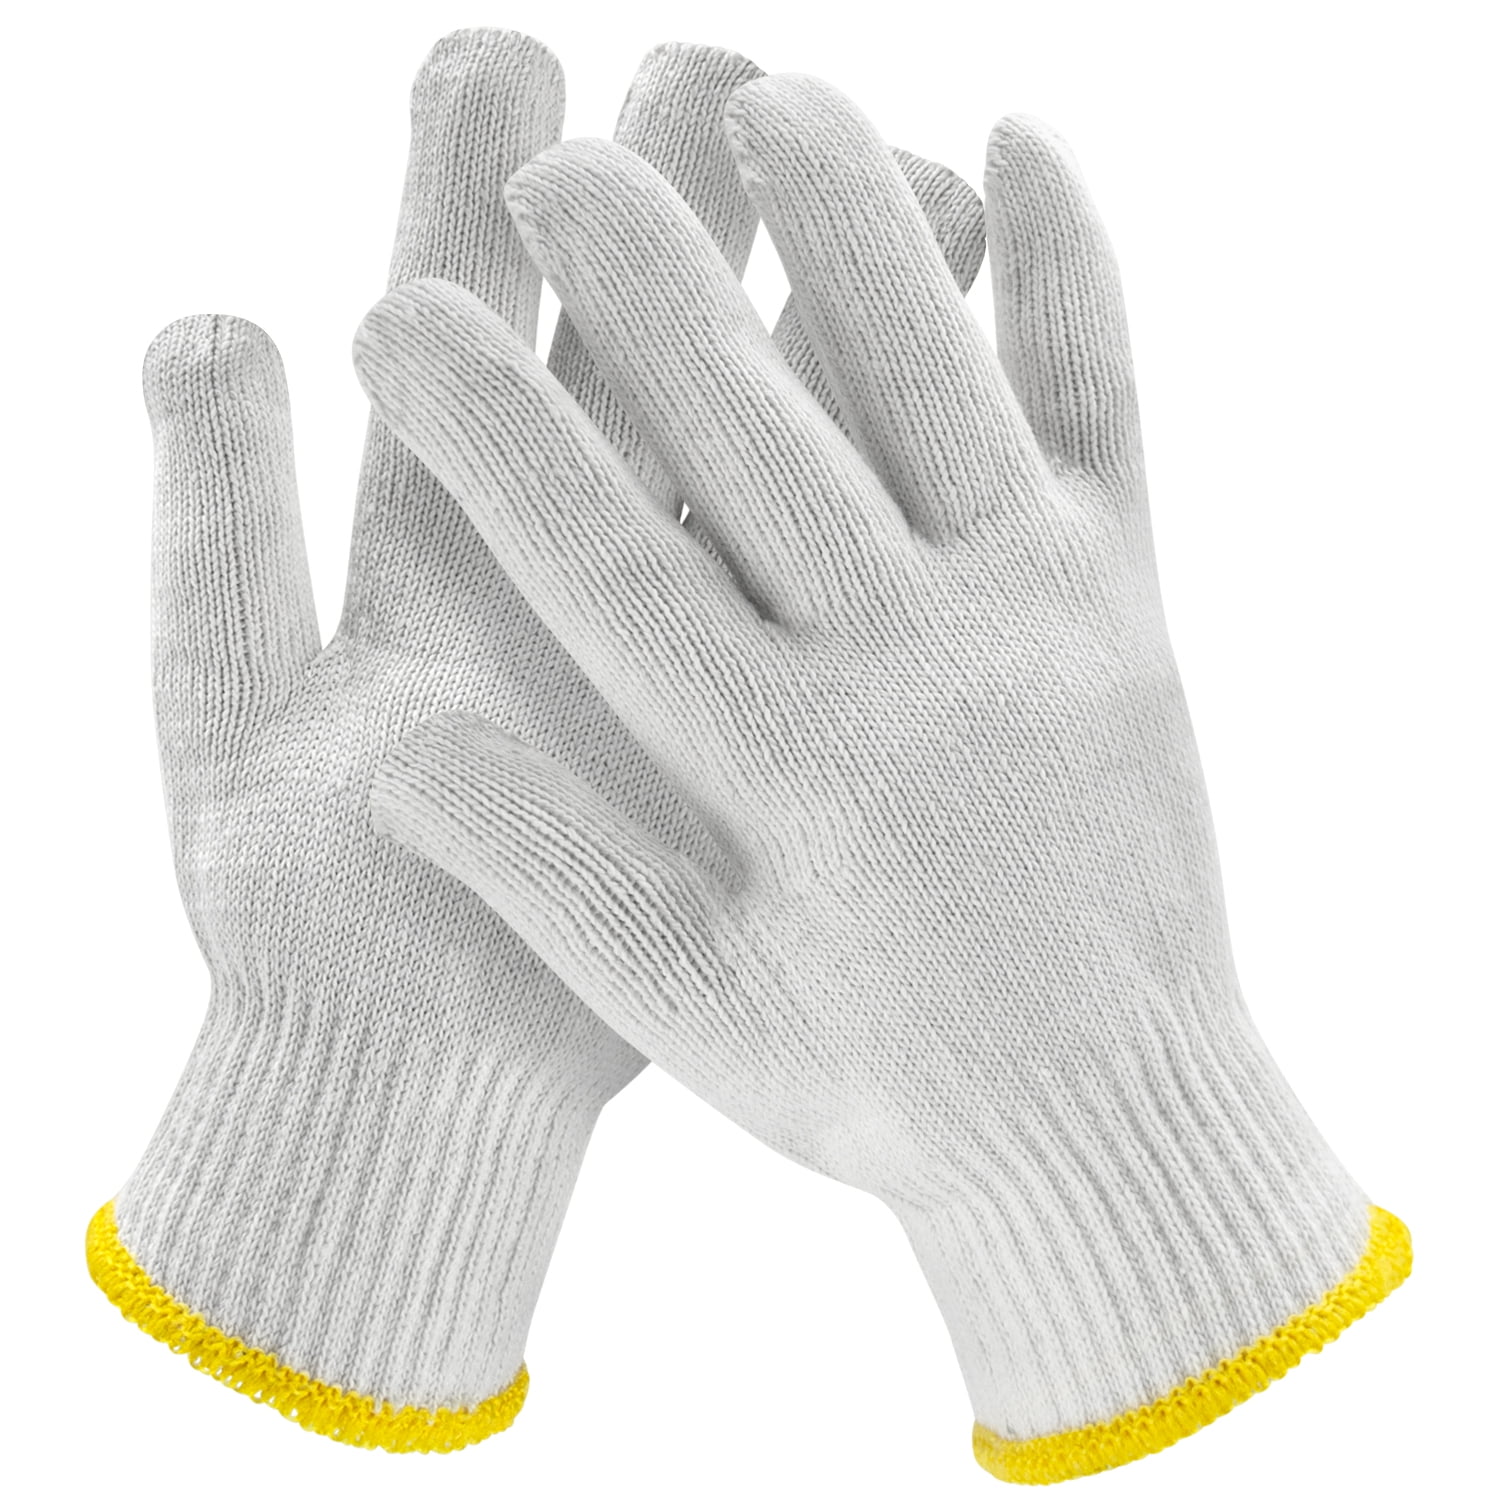 Better Grip Gloves - Snow's Farm Pickup